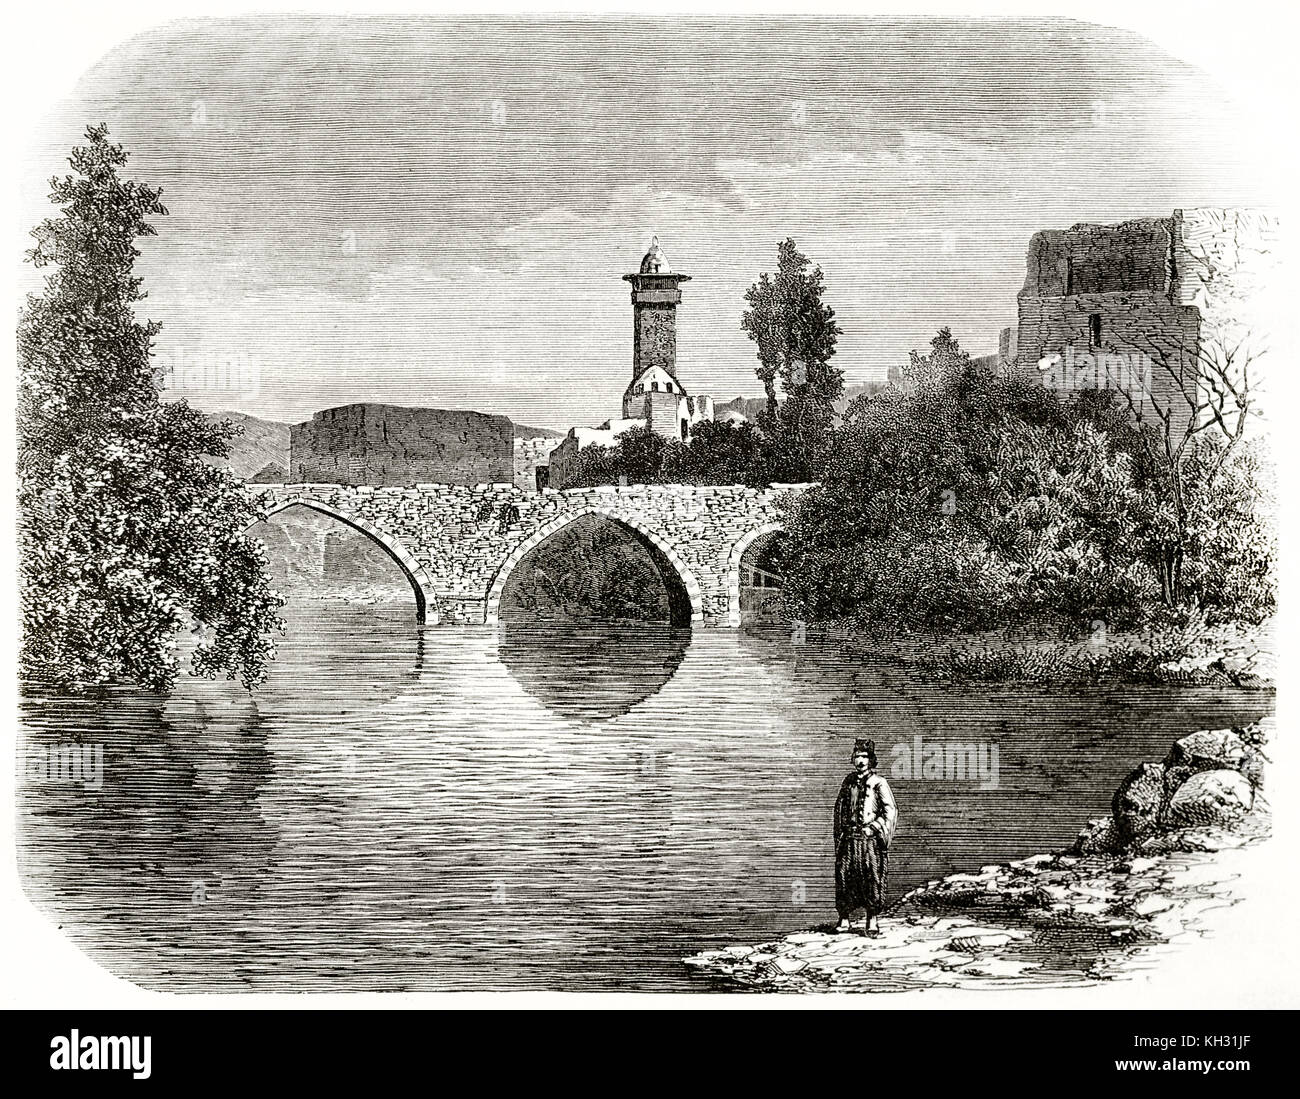 Vue ancienne d'un pont à l'Oronte, en Syrie. Par De Bar après Hachette, publ. sur le Tour du Monde, Paris, 1863 Banque D'Images